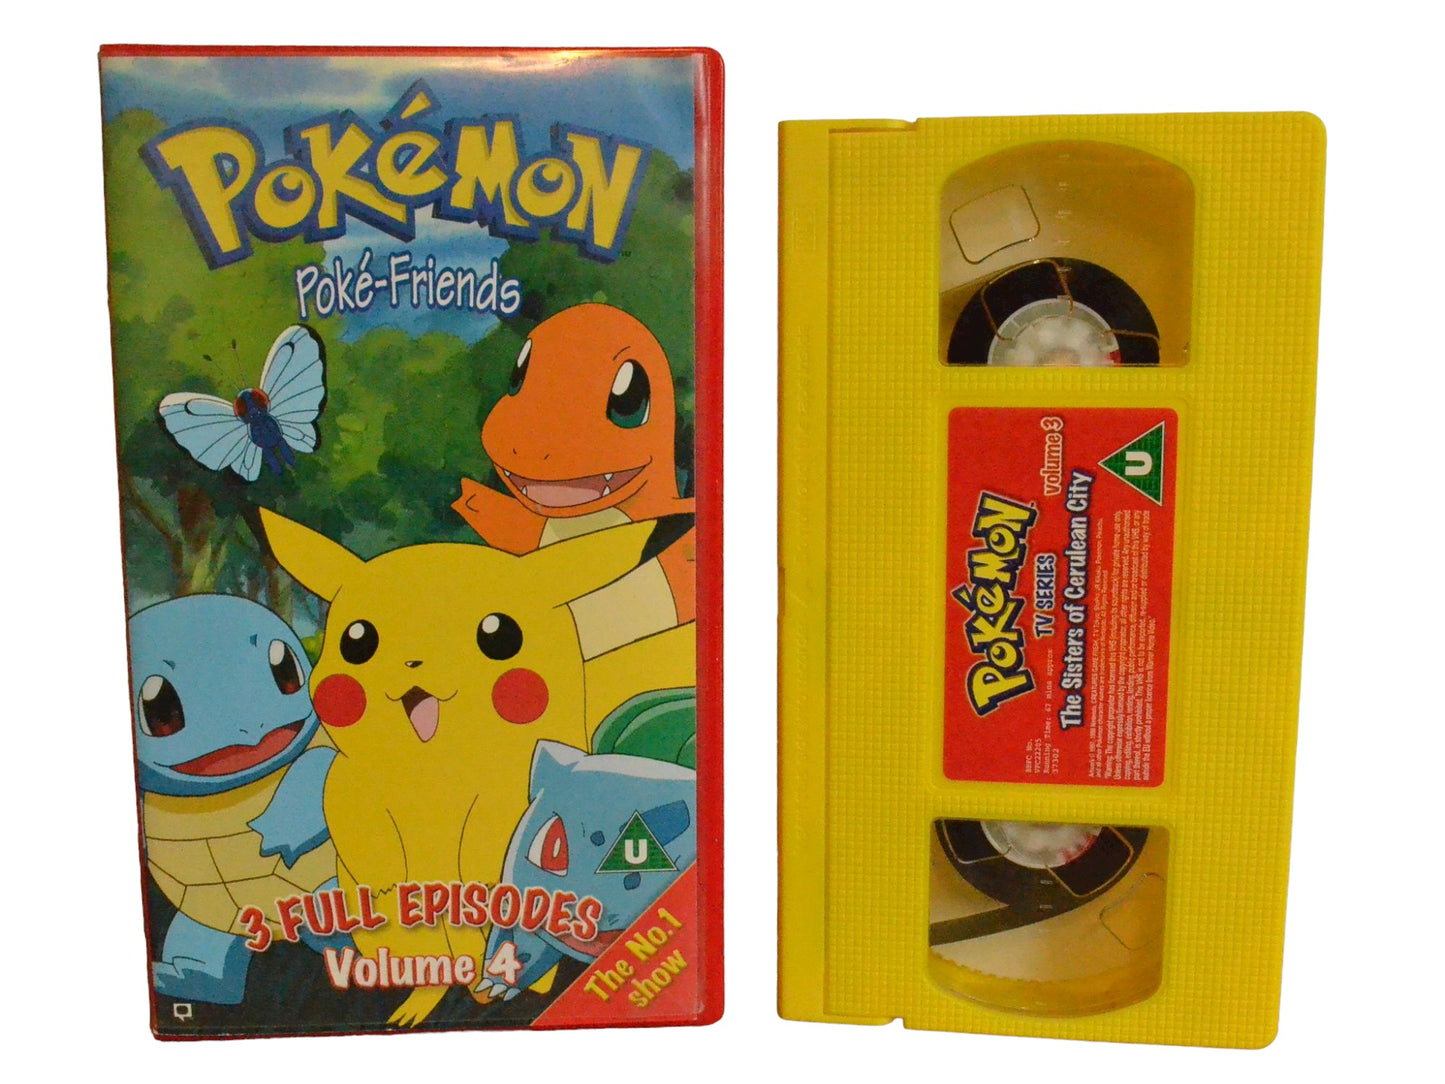 Pokemon Poke-Friends - Volume 4 (3 Full Episodes) - Warner Bros Family Entertainment - Childrens - PAL - VHS-